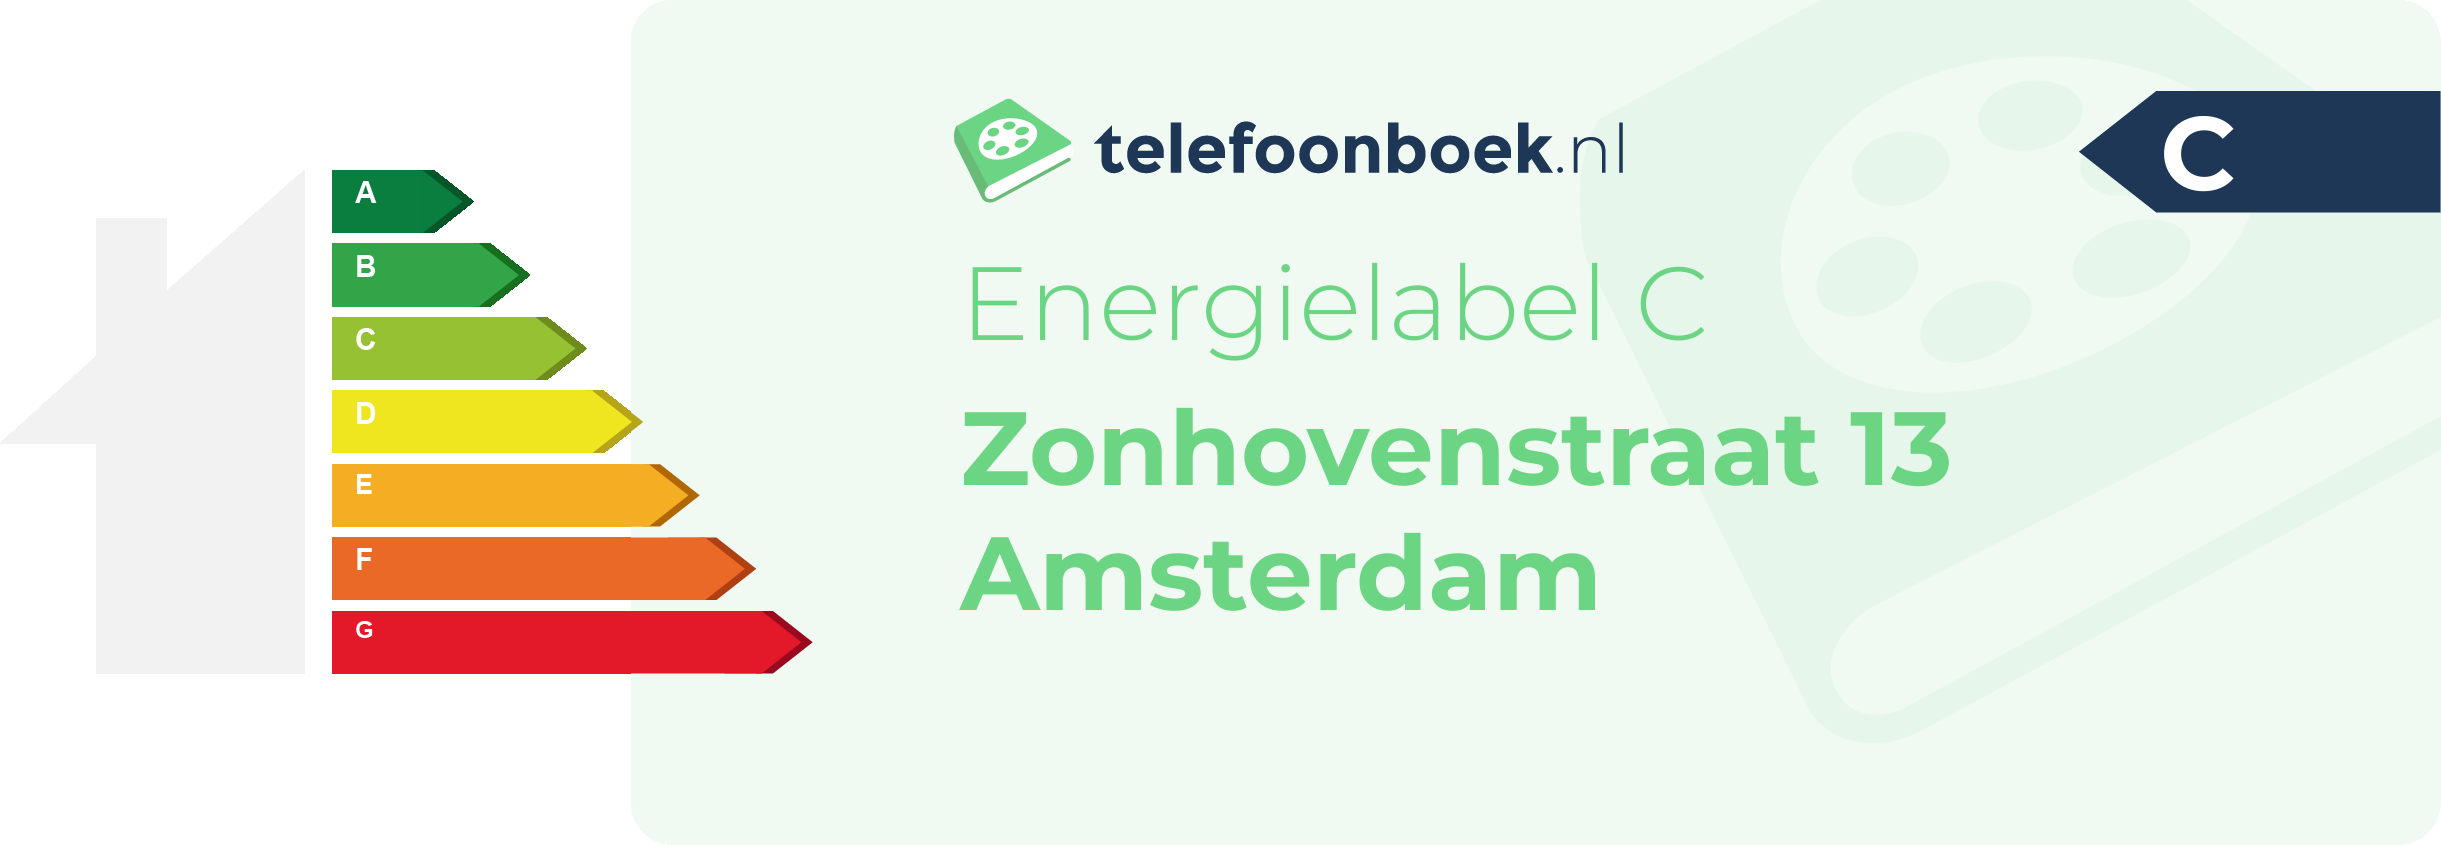 Energielabel Zonhovenstraat 13 Amsterdam